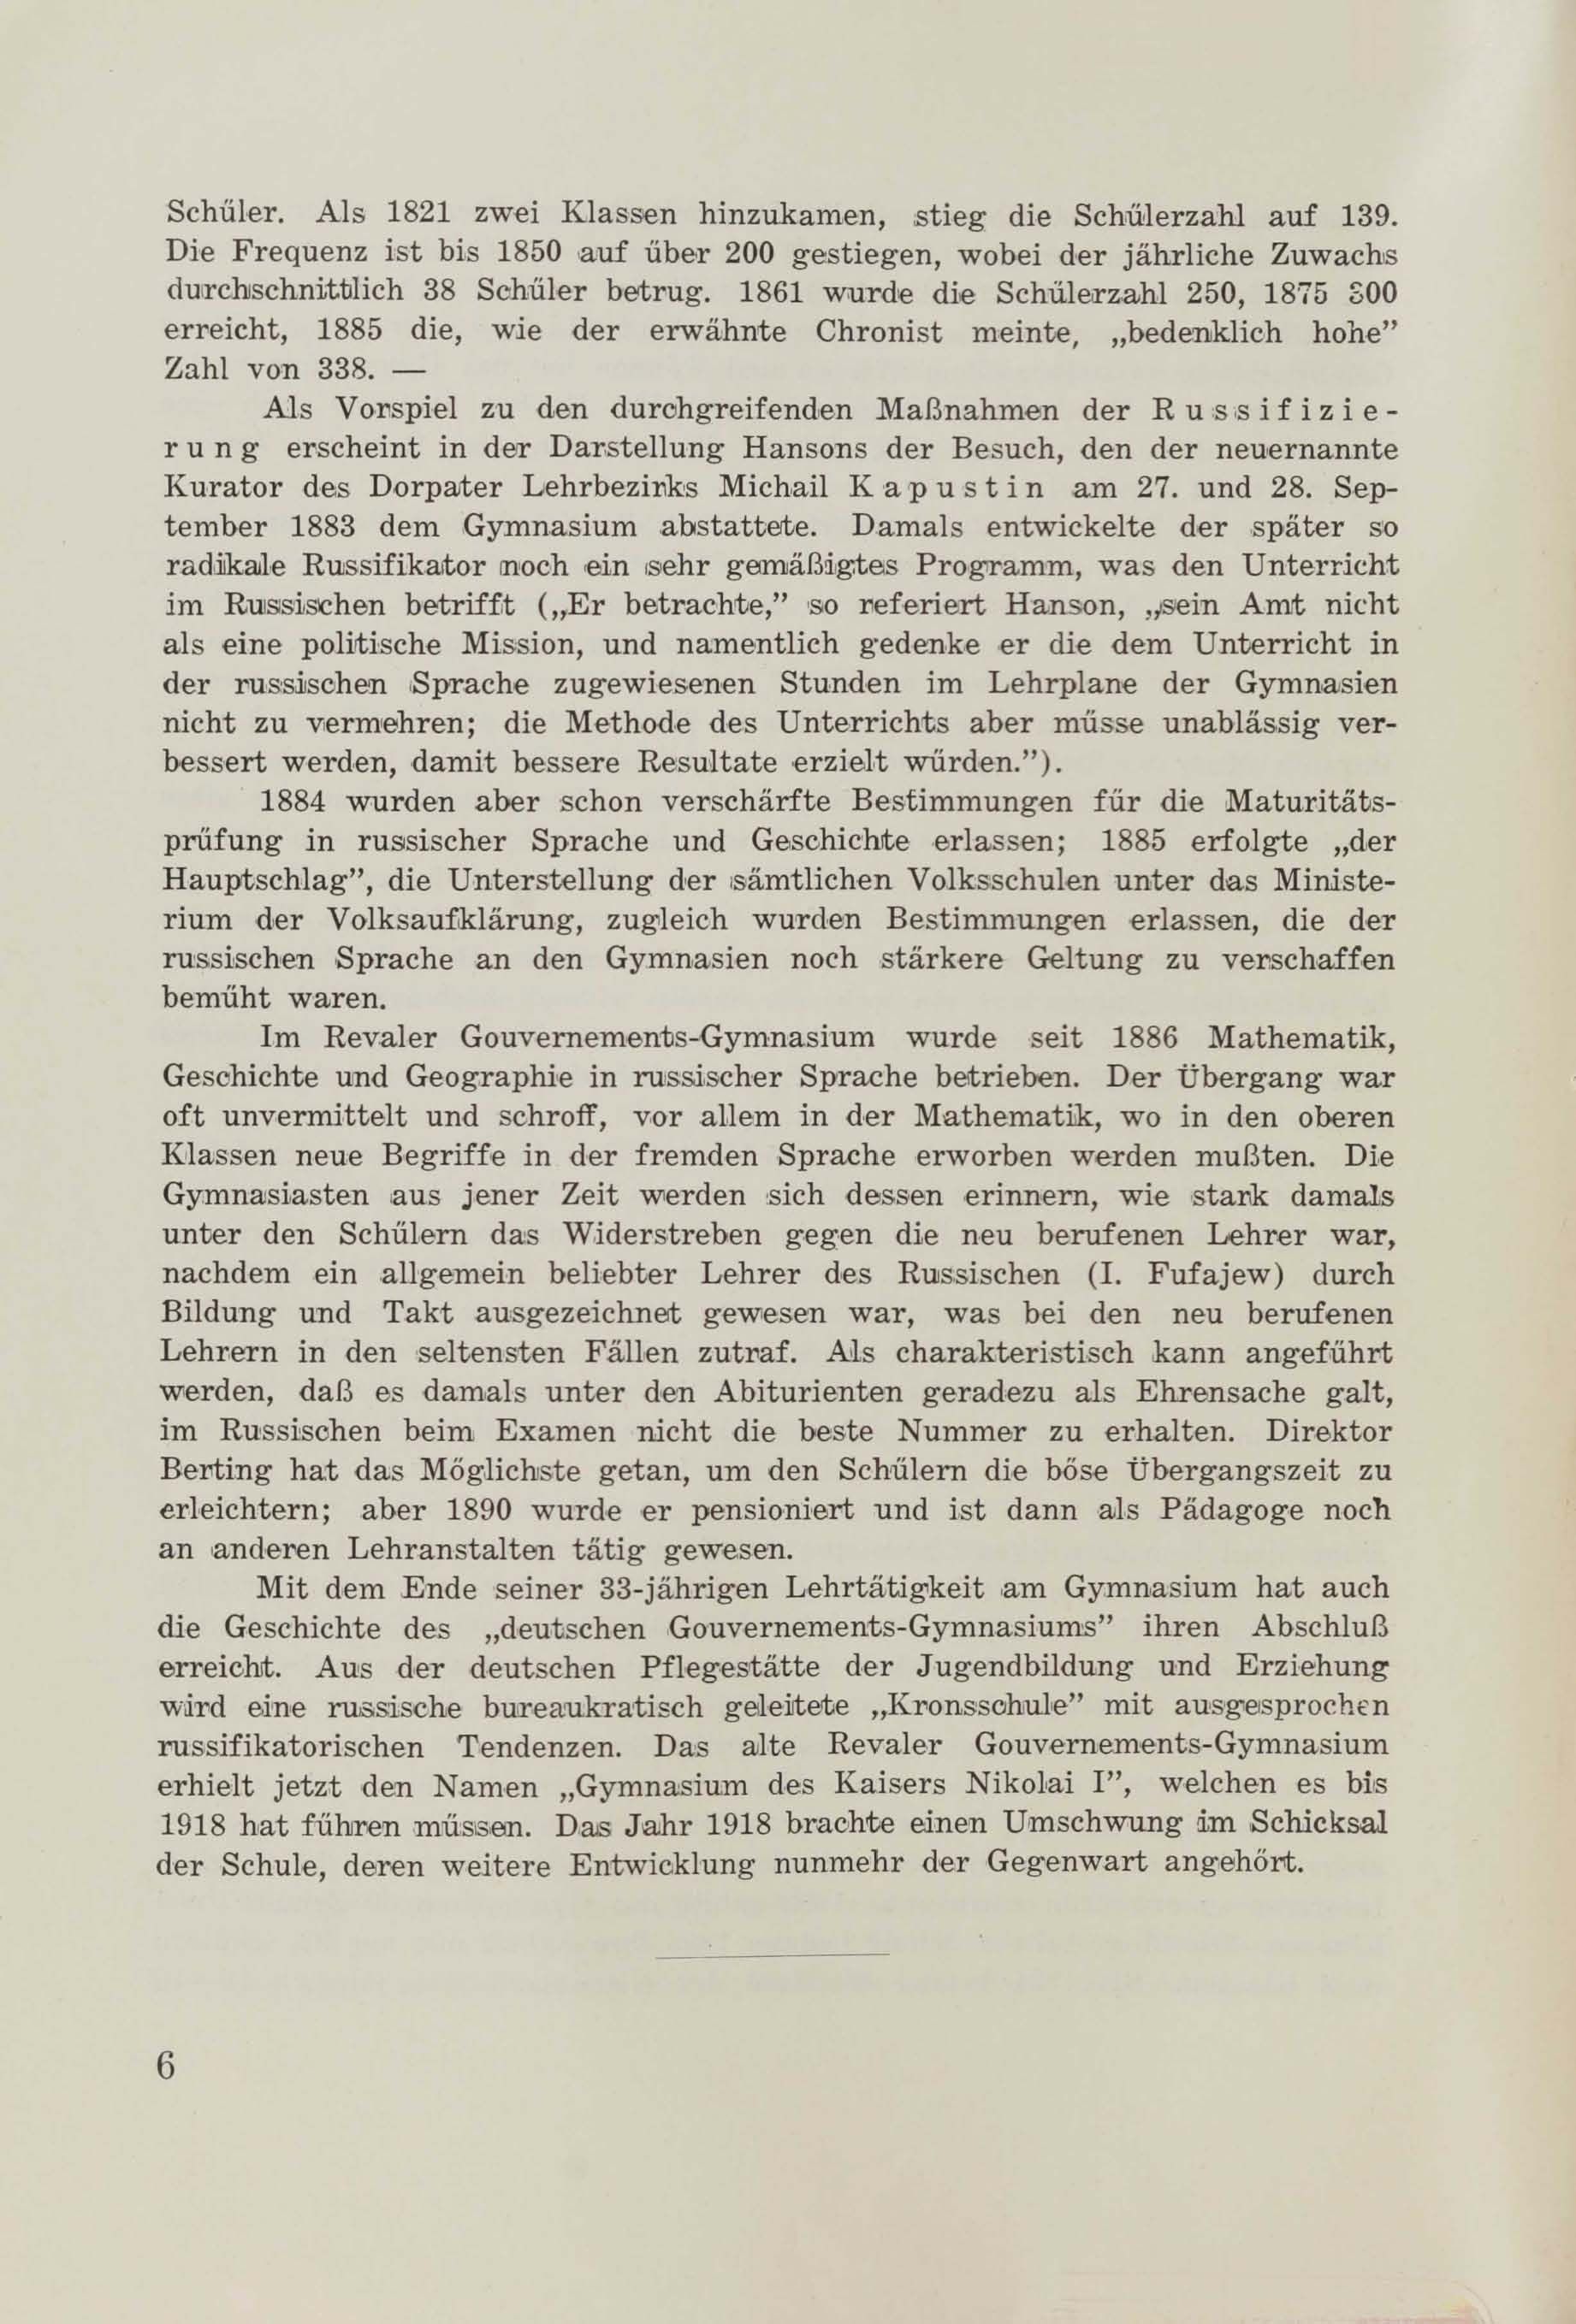 Schüler-Verzeichnis des Revalschen Gouvernements-Gymnasiums 1805–1890 (1931) | 17. (6) Основной текст